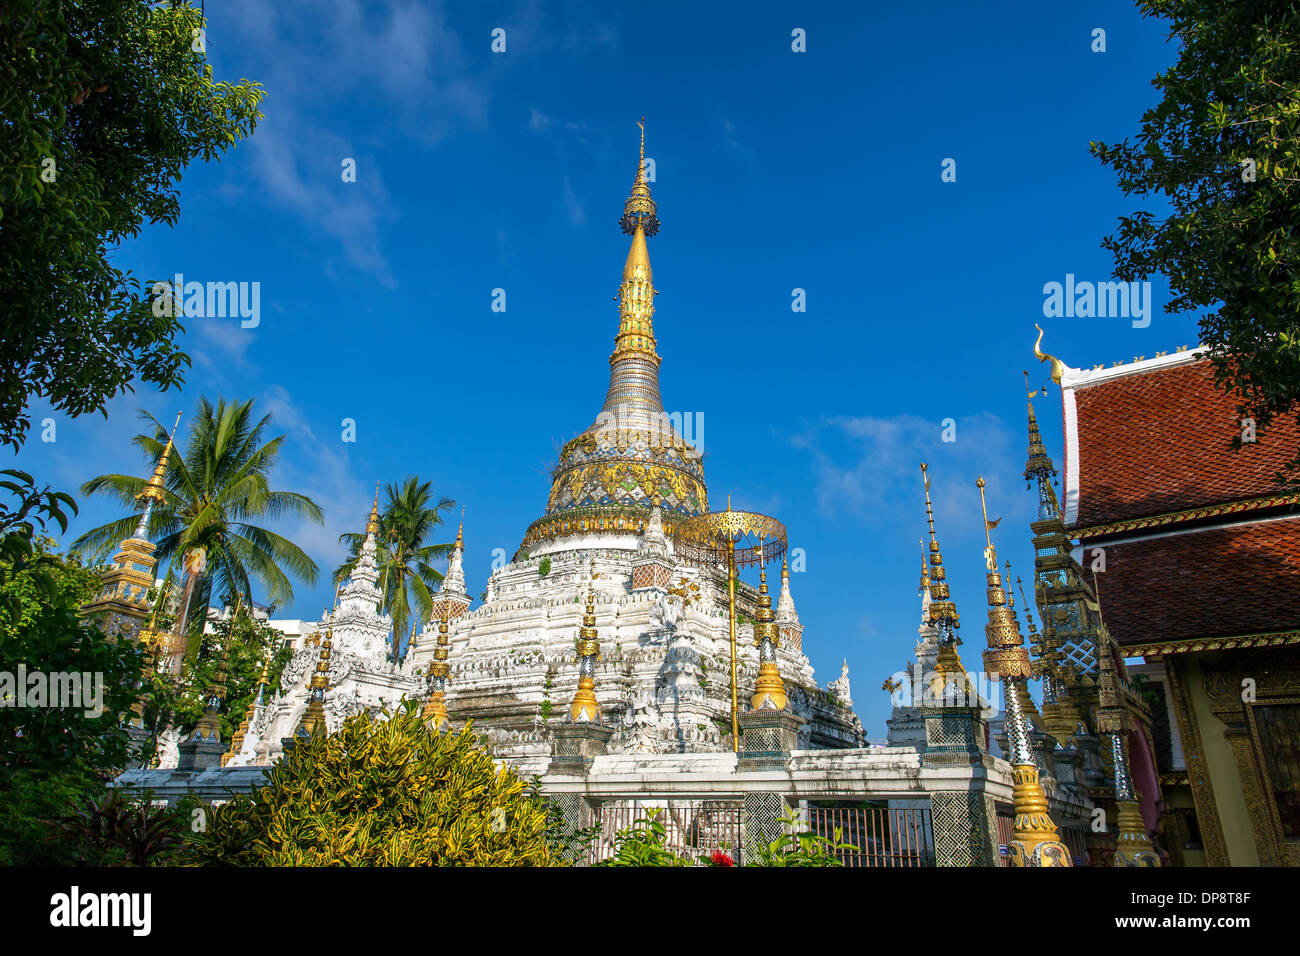 Pagoda at Wat Saen Fang temple in Chiang Mai, Thailand Stock Photo